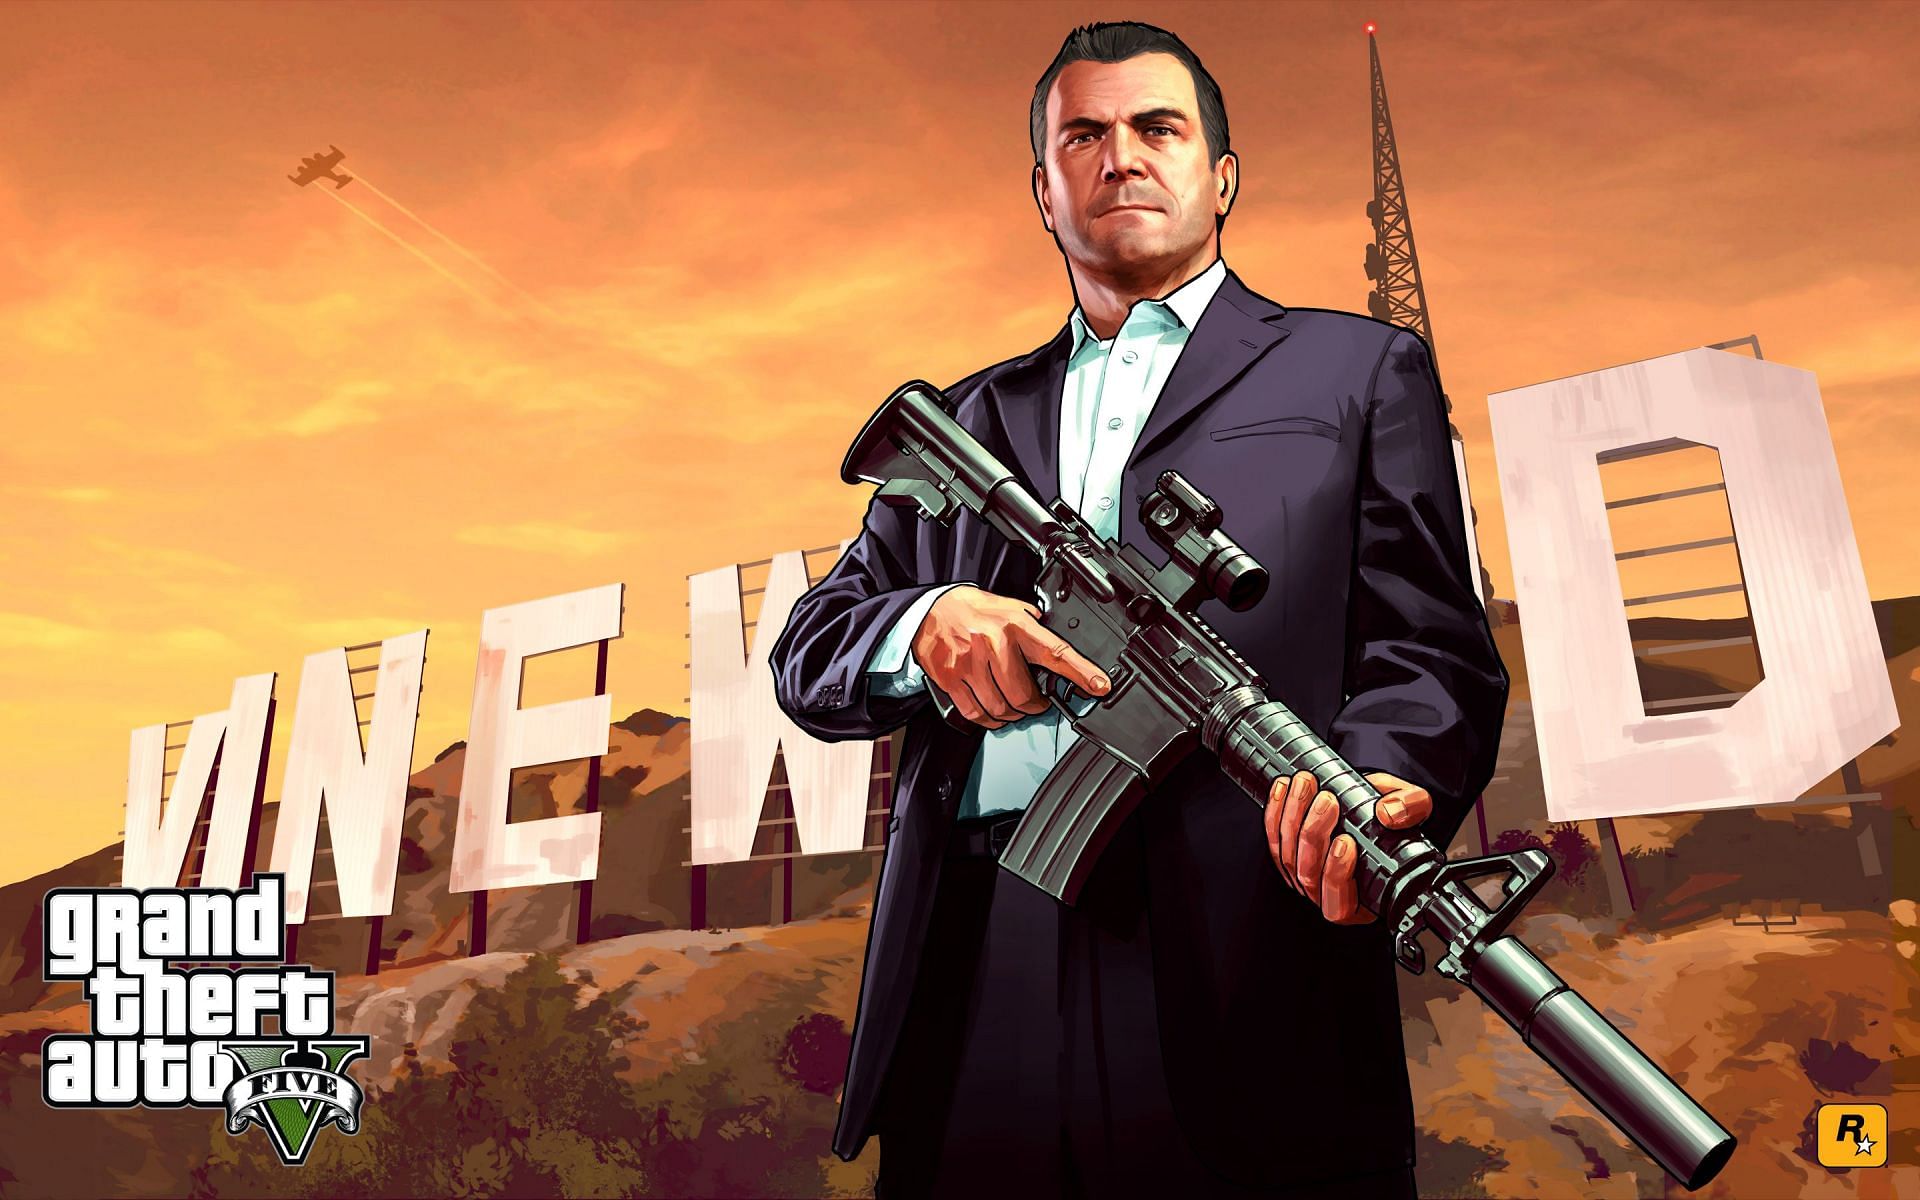 Artwork from Grand Theft Auto V (Image via Rockstar Games)